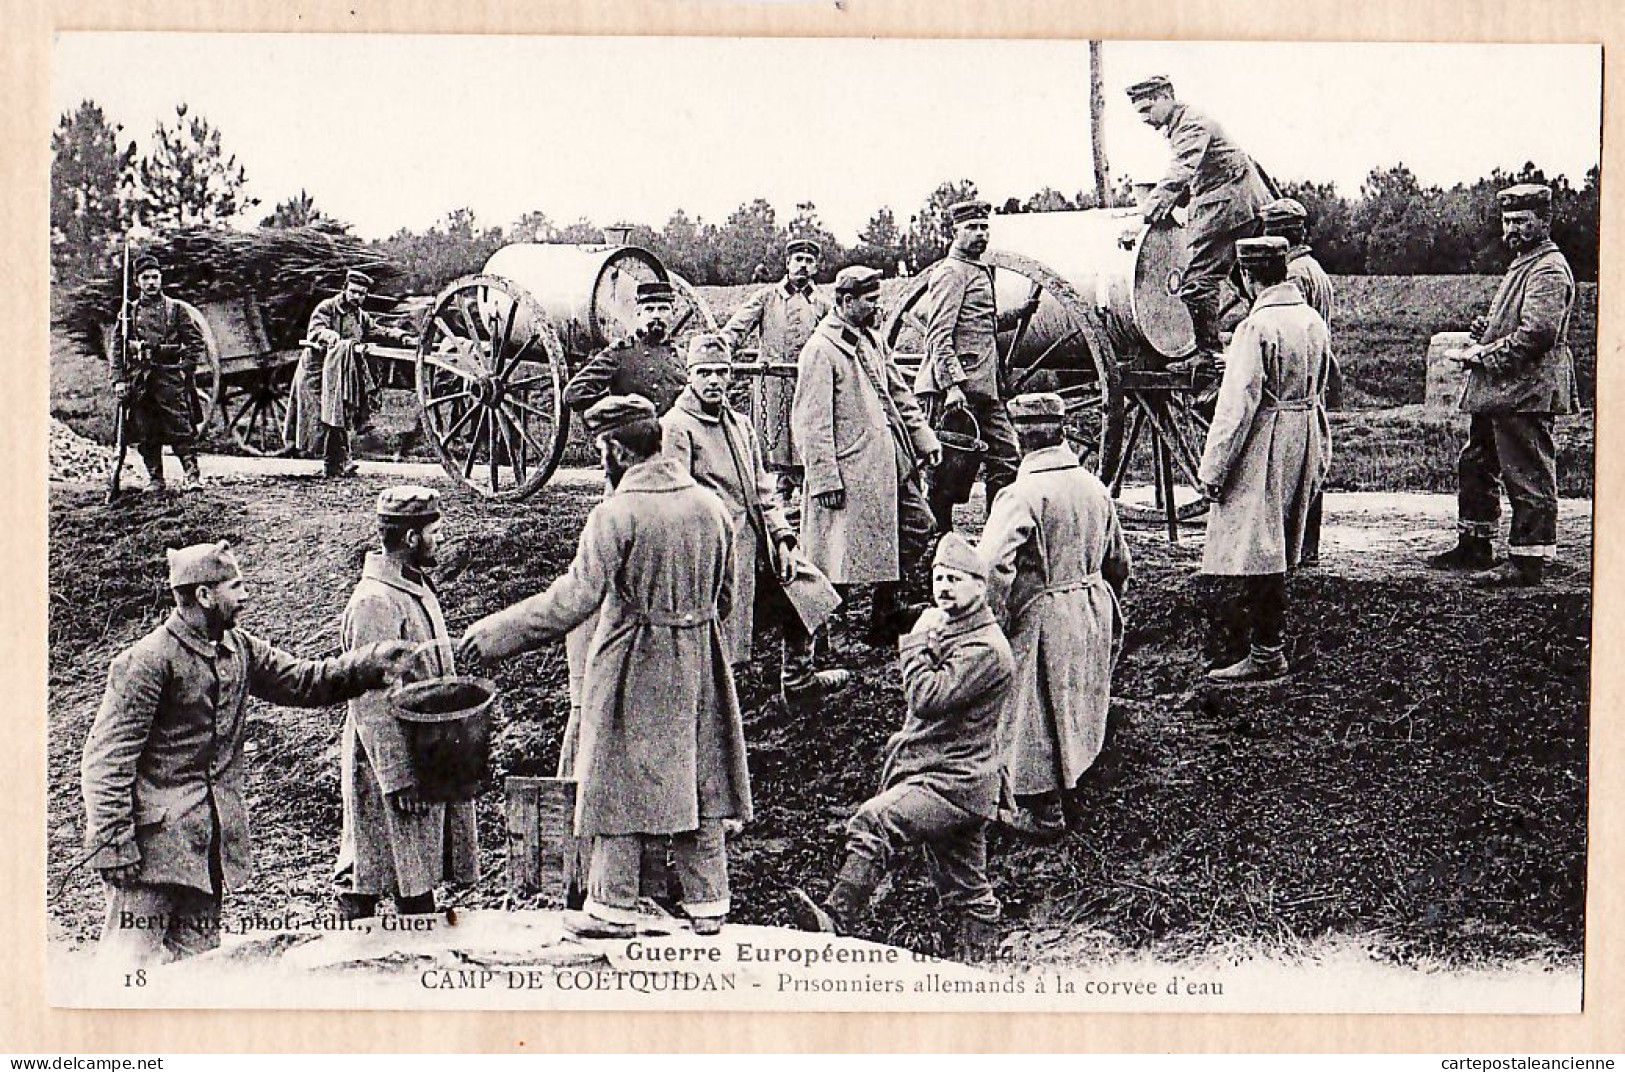 01697 / Camp De COETQUIDAN 56-Morbihan Prisonniers Allemands Corvée D'Eau Guerre Européenne 1914 BERTHAUX 18 - Guer Cötquidan